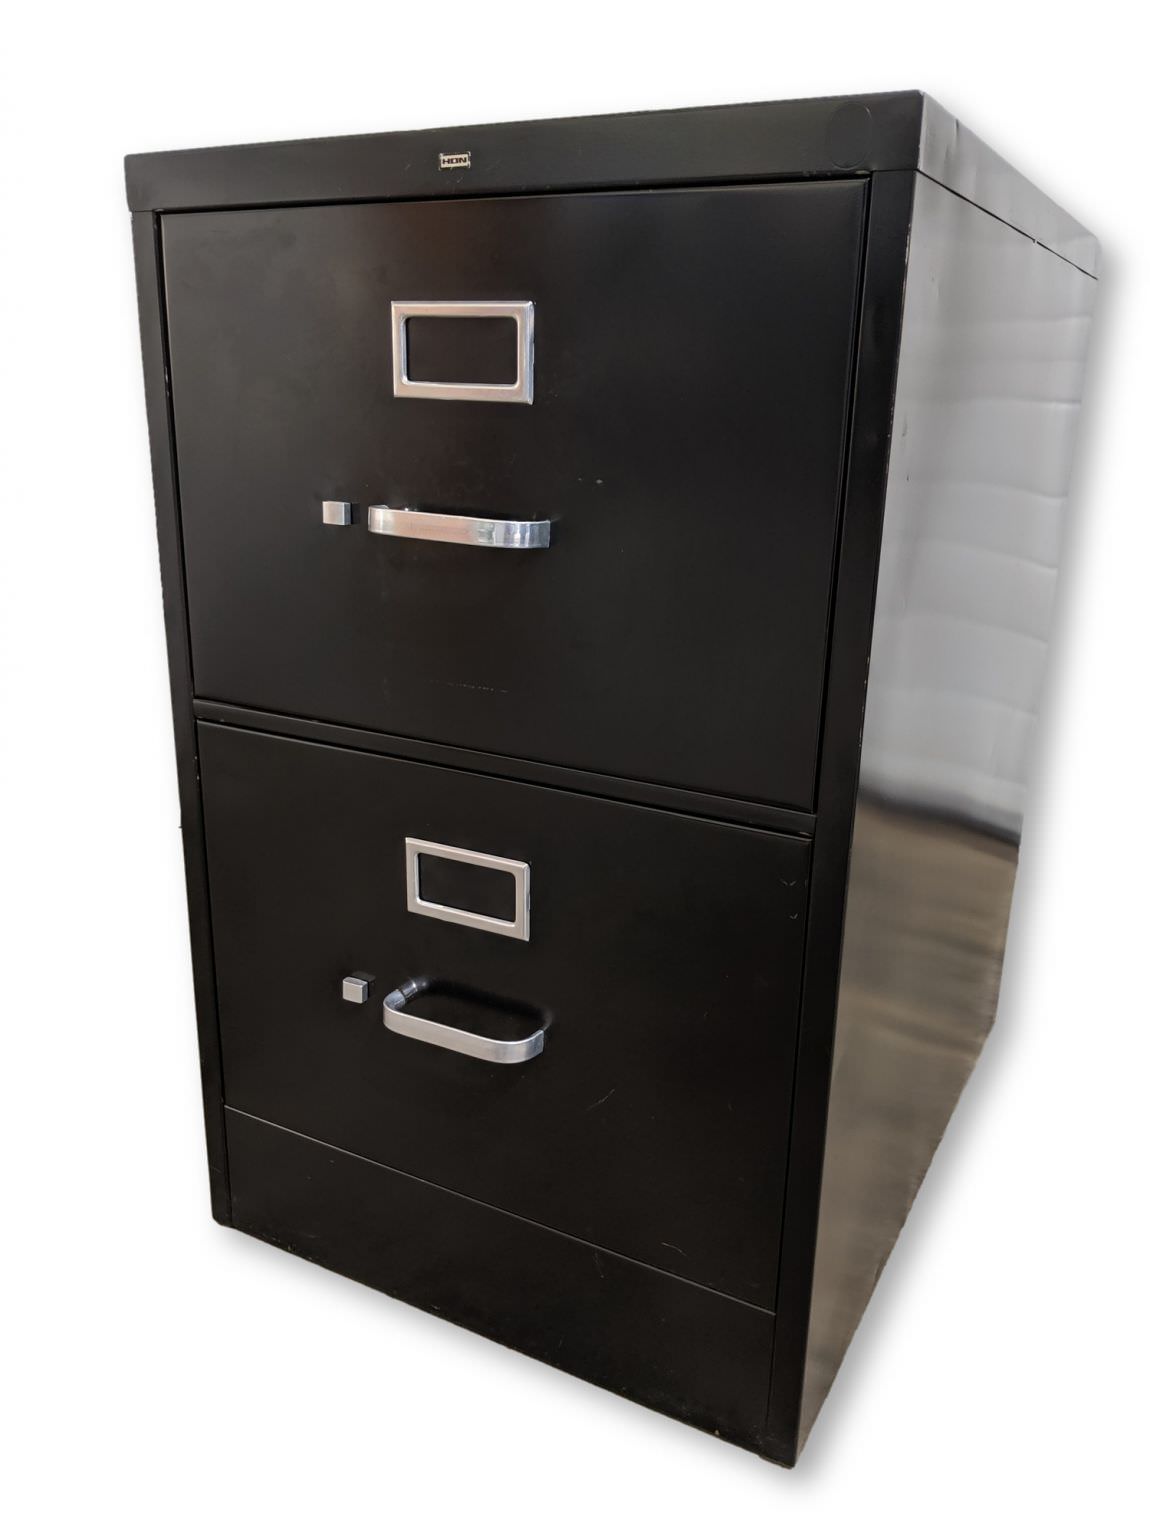 Black Hon 2 Drawer Vertical Legal Size File Cabinet